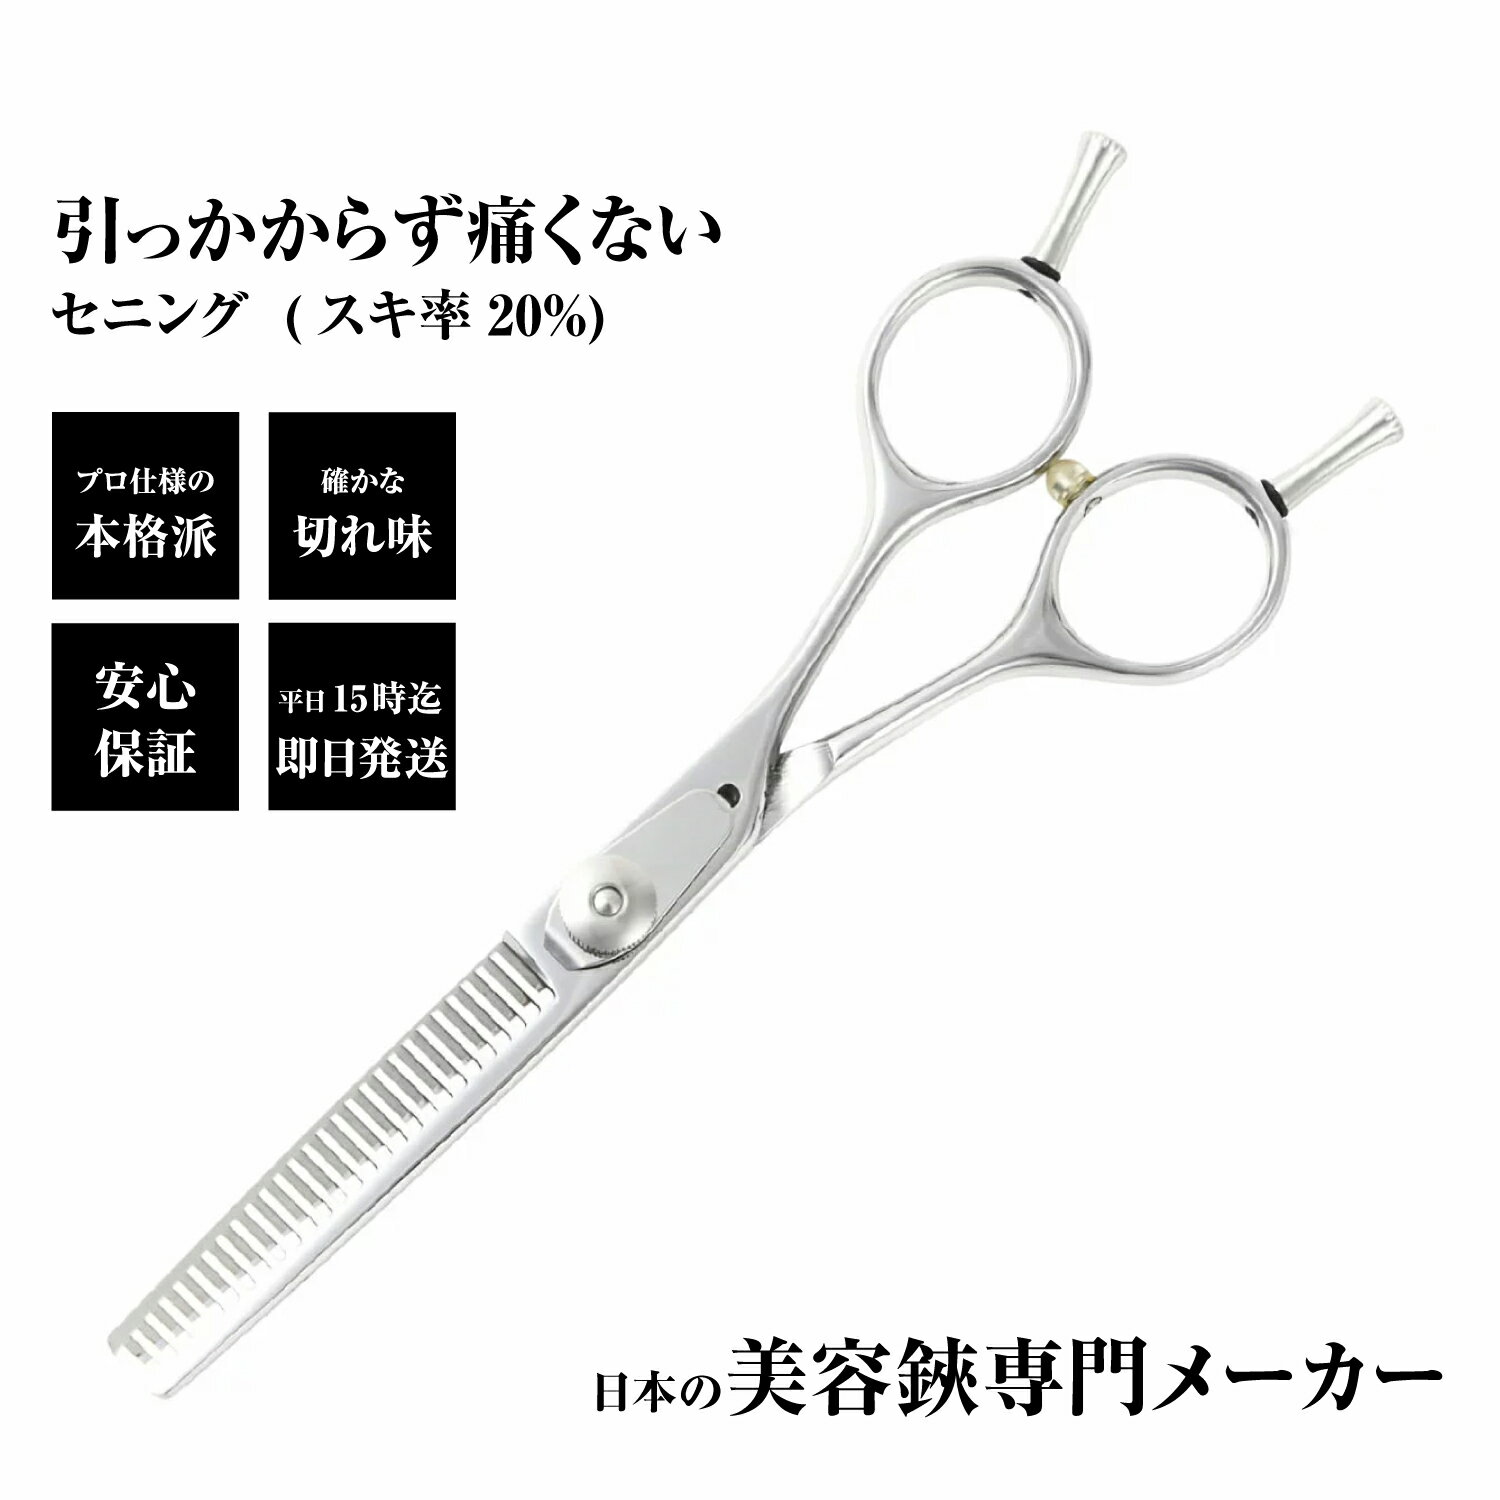 日本の鋏専門メーカー 鍛造仕上 この品質でこの価格 /DEEDS PP-02 セニング 単品/美容師 理容 理容師 散髪 すきばさみ セニングシザー